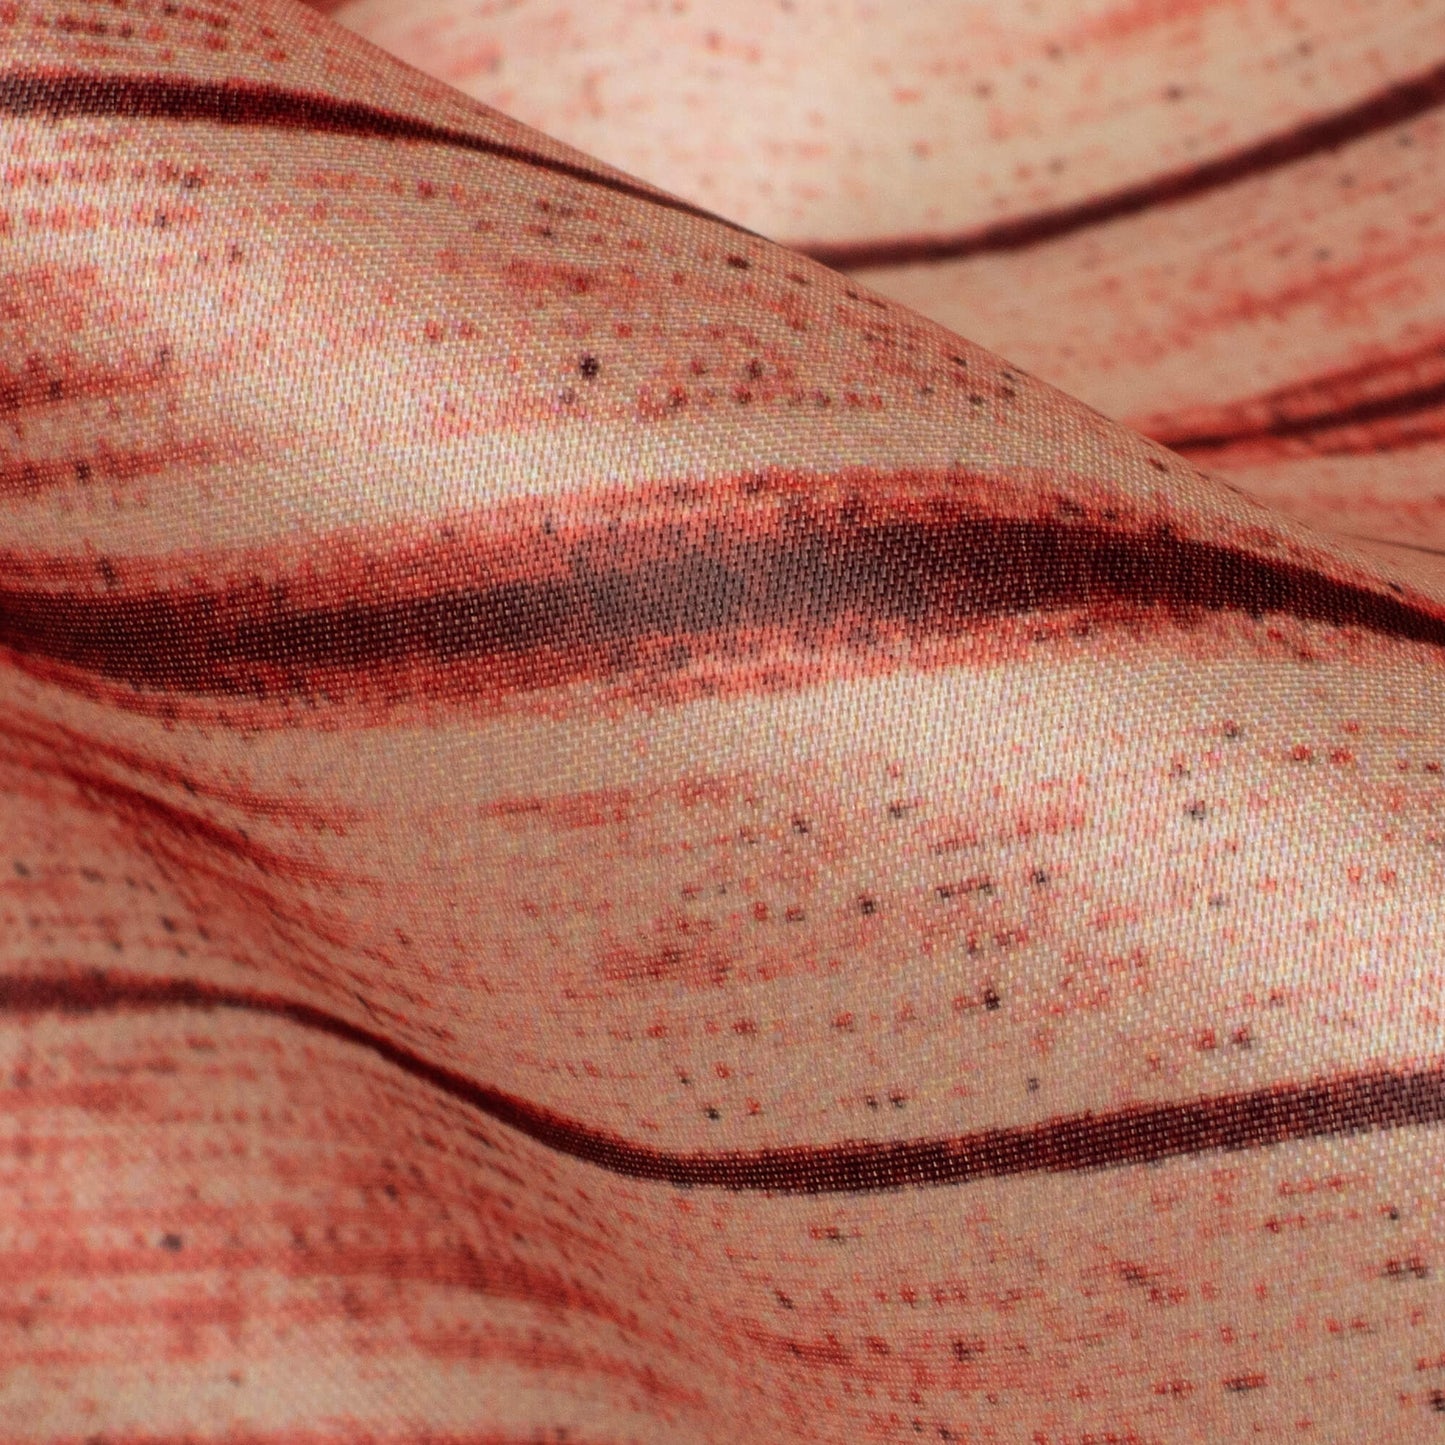 Mahogany Red And Black Abstract Pattern Digital Print Organza Satin Fabric